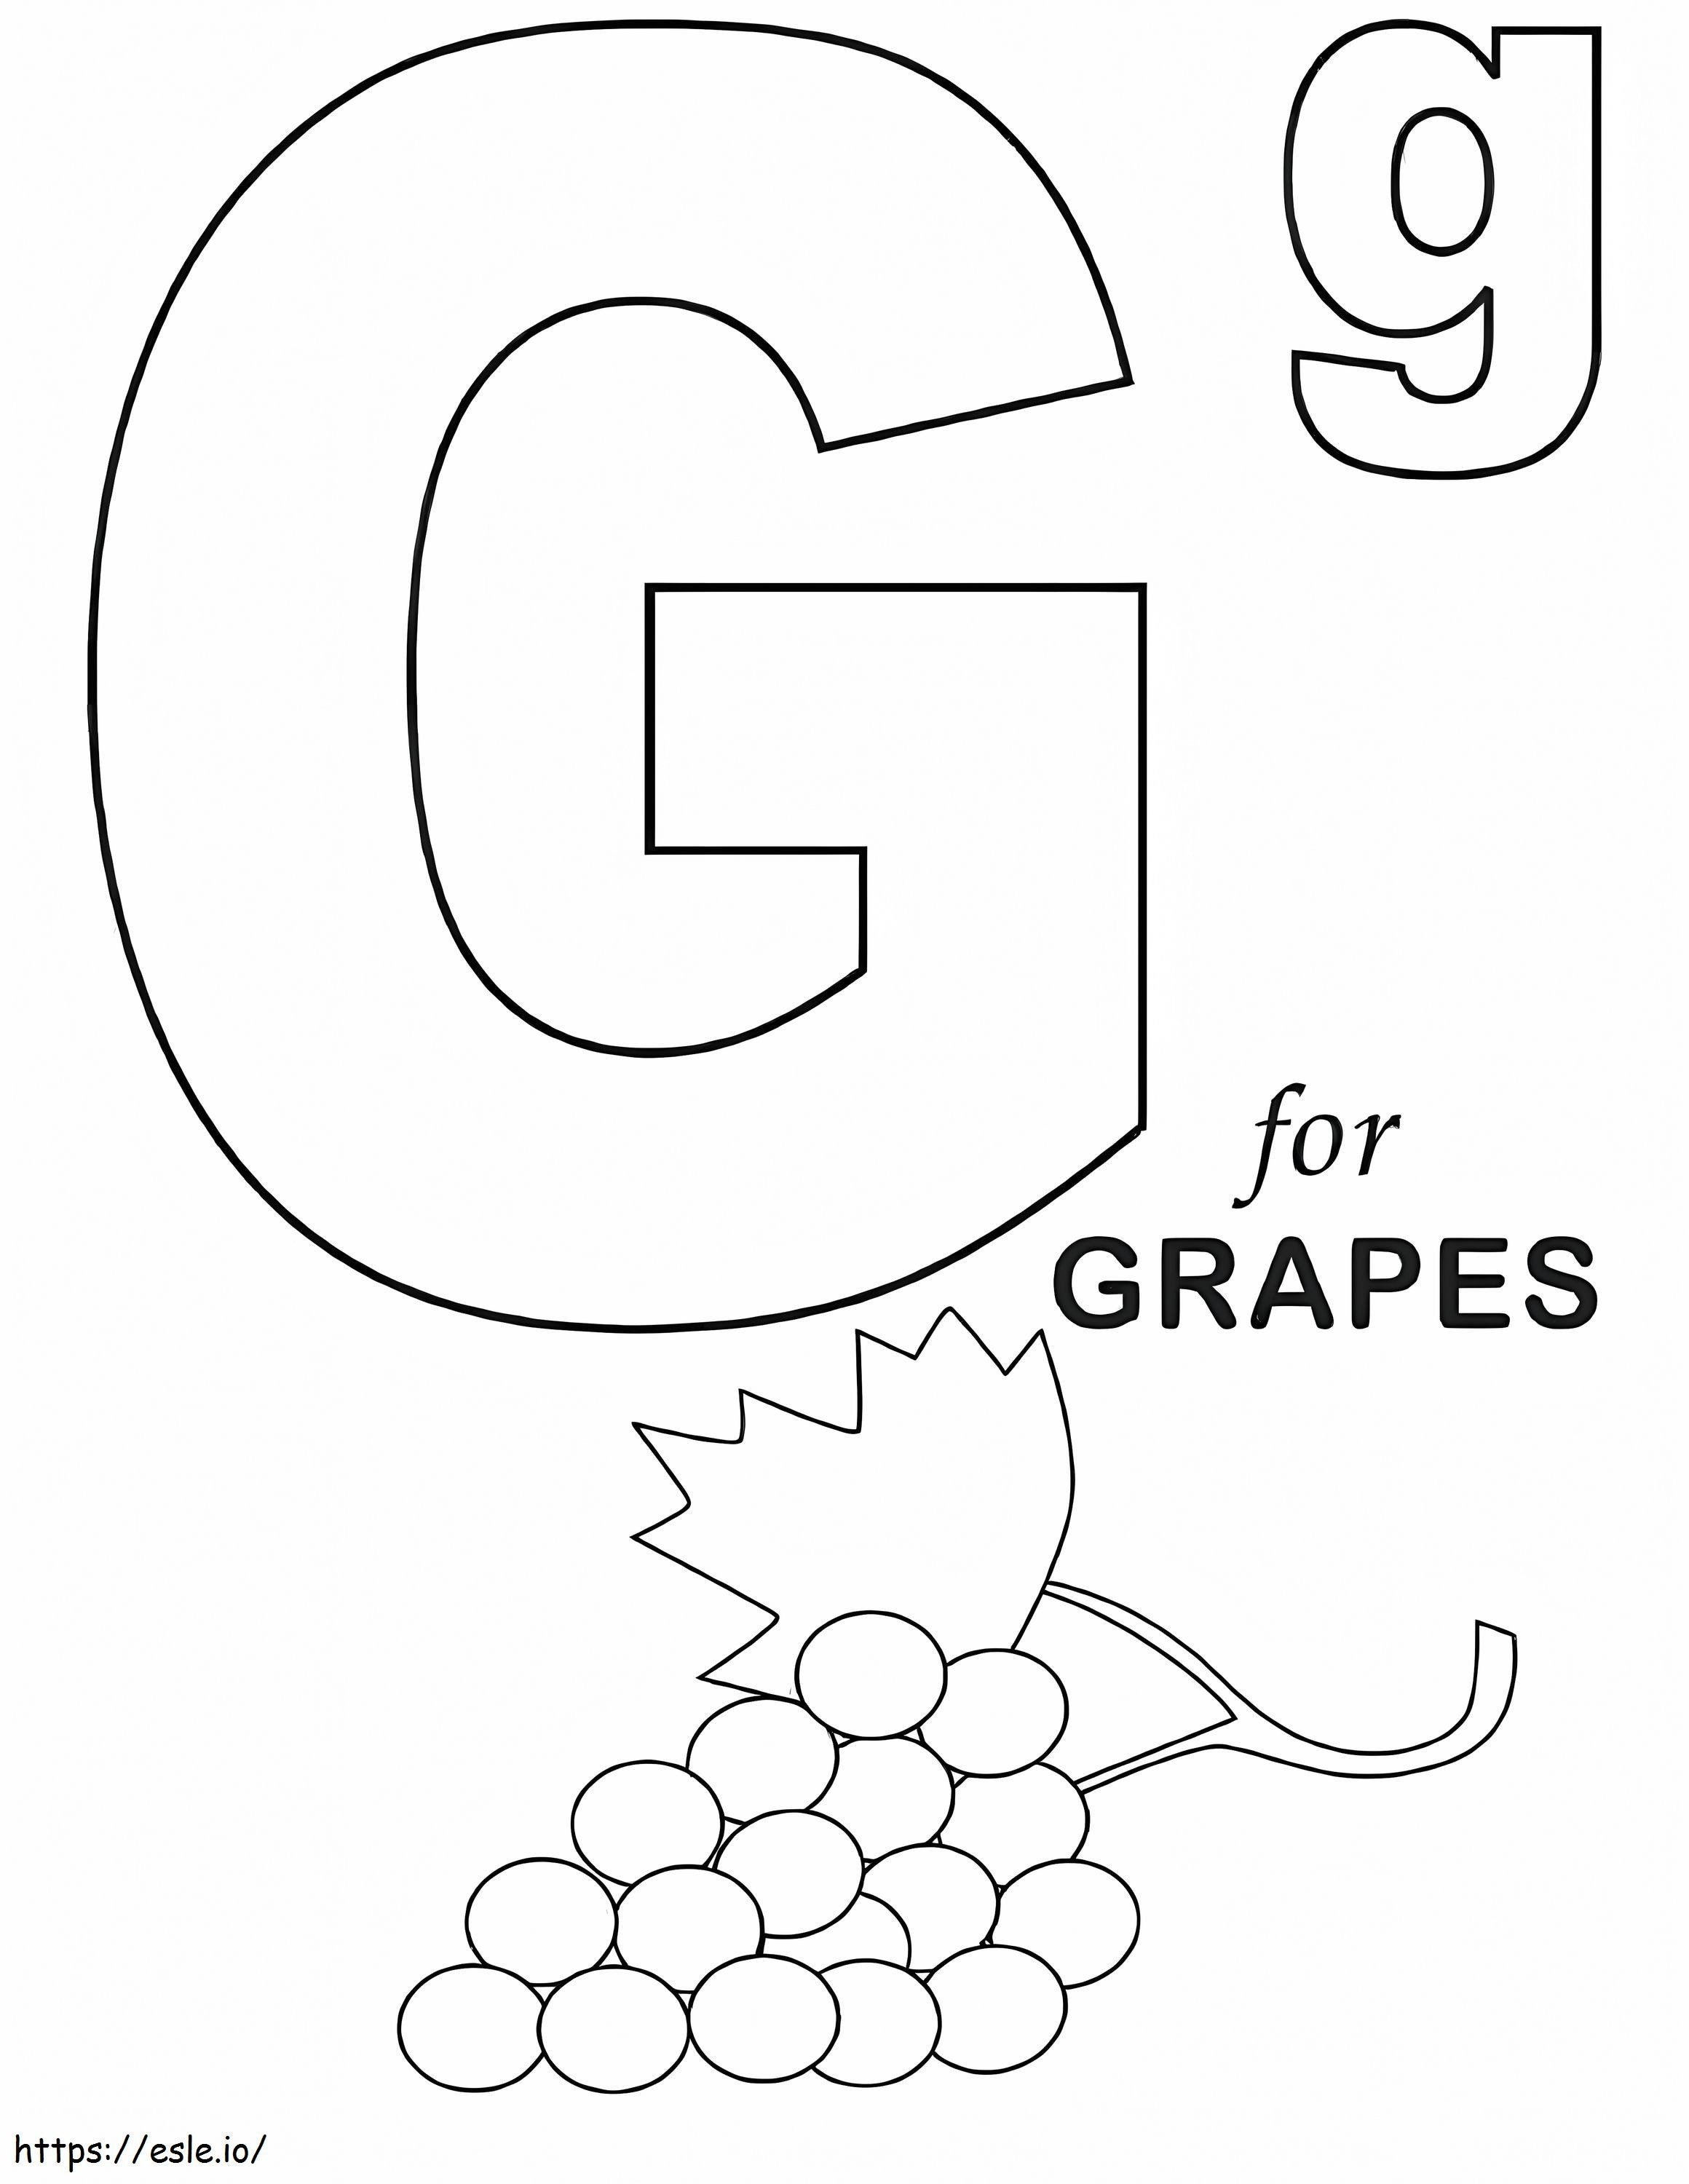 Letra G de uvas para colorear